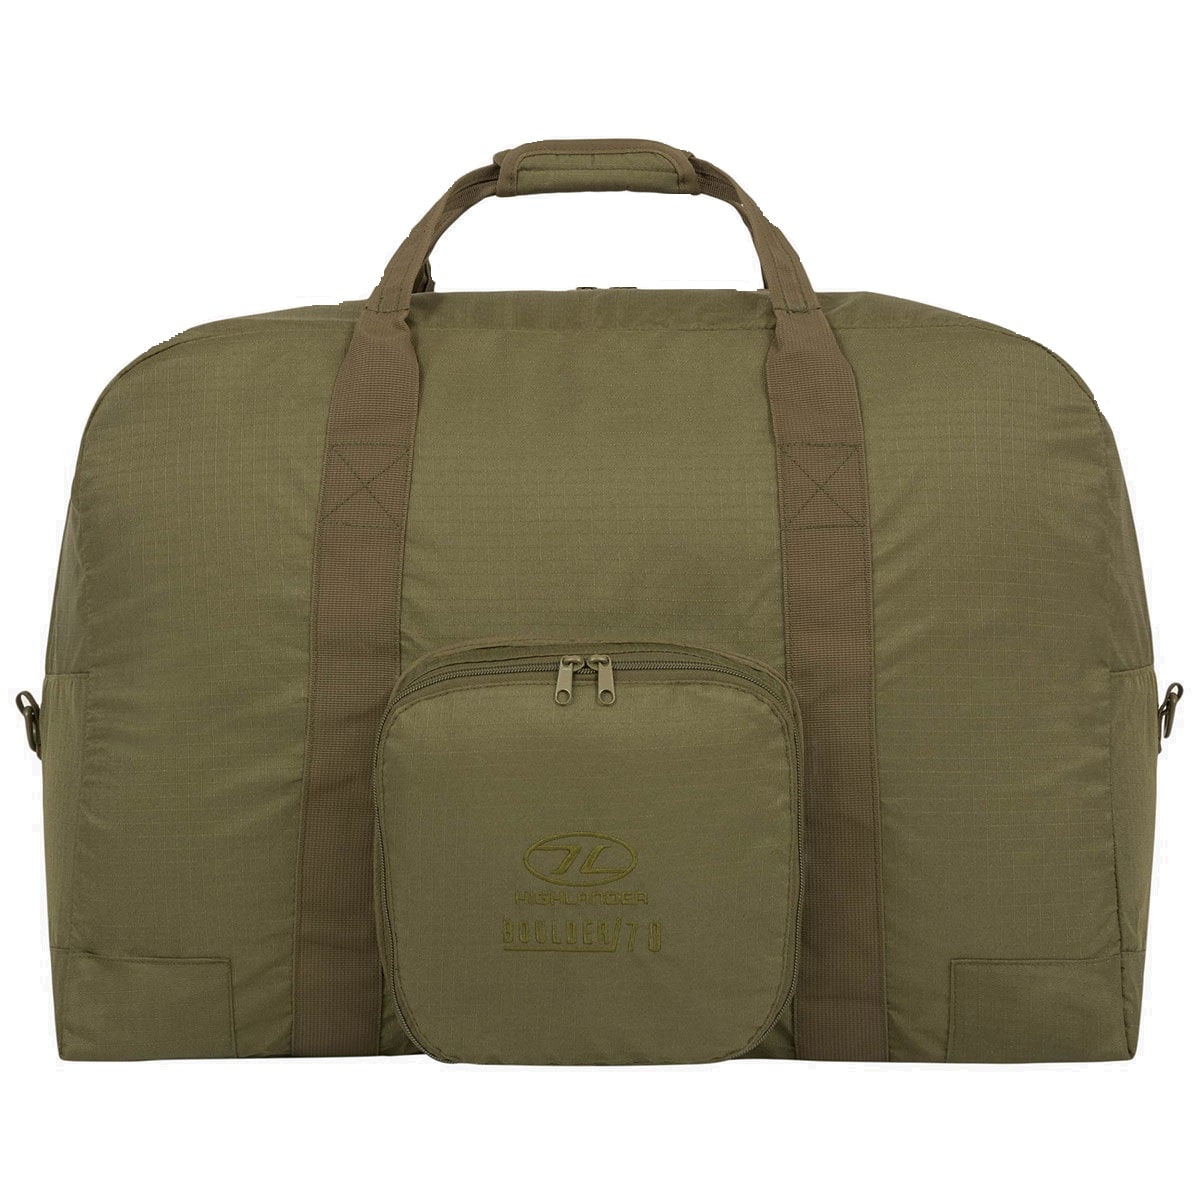 Torba Highlander Outdoor Boulder Duffle Bag 70 l - Olive